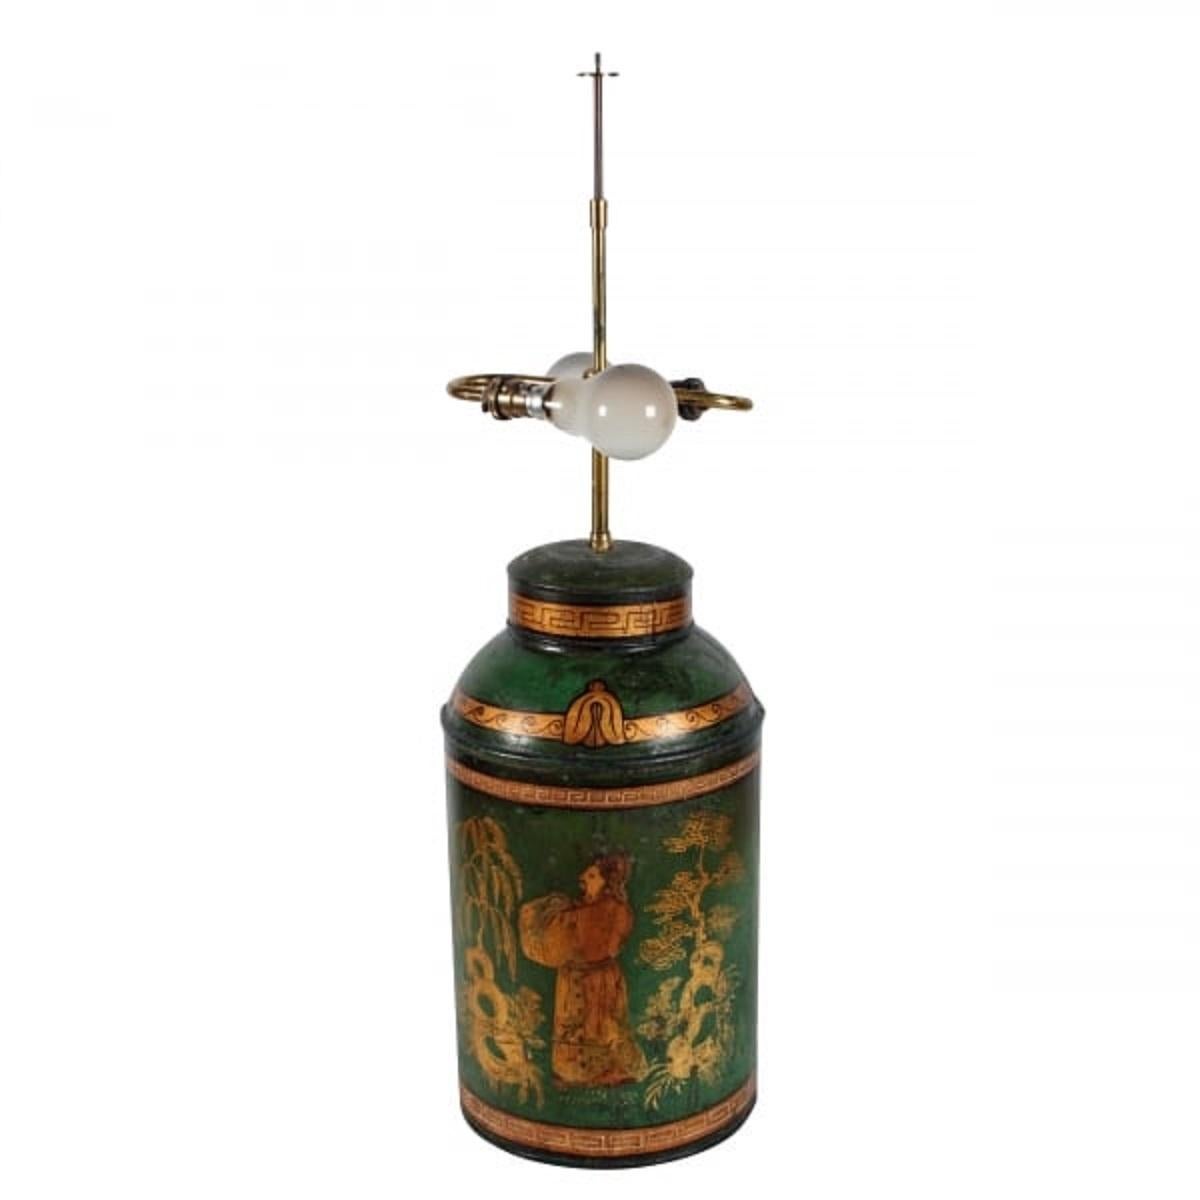 European Victorian Tea Tin Lamp, 19th Century